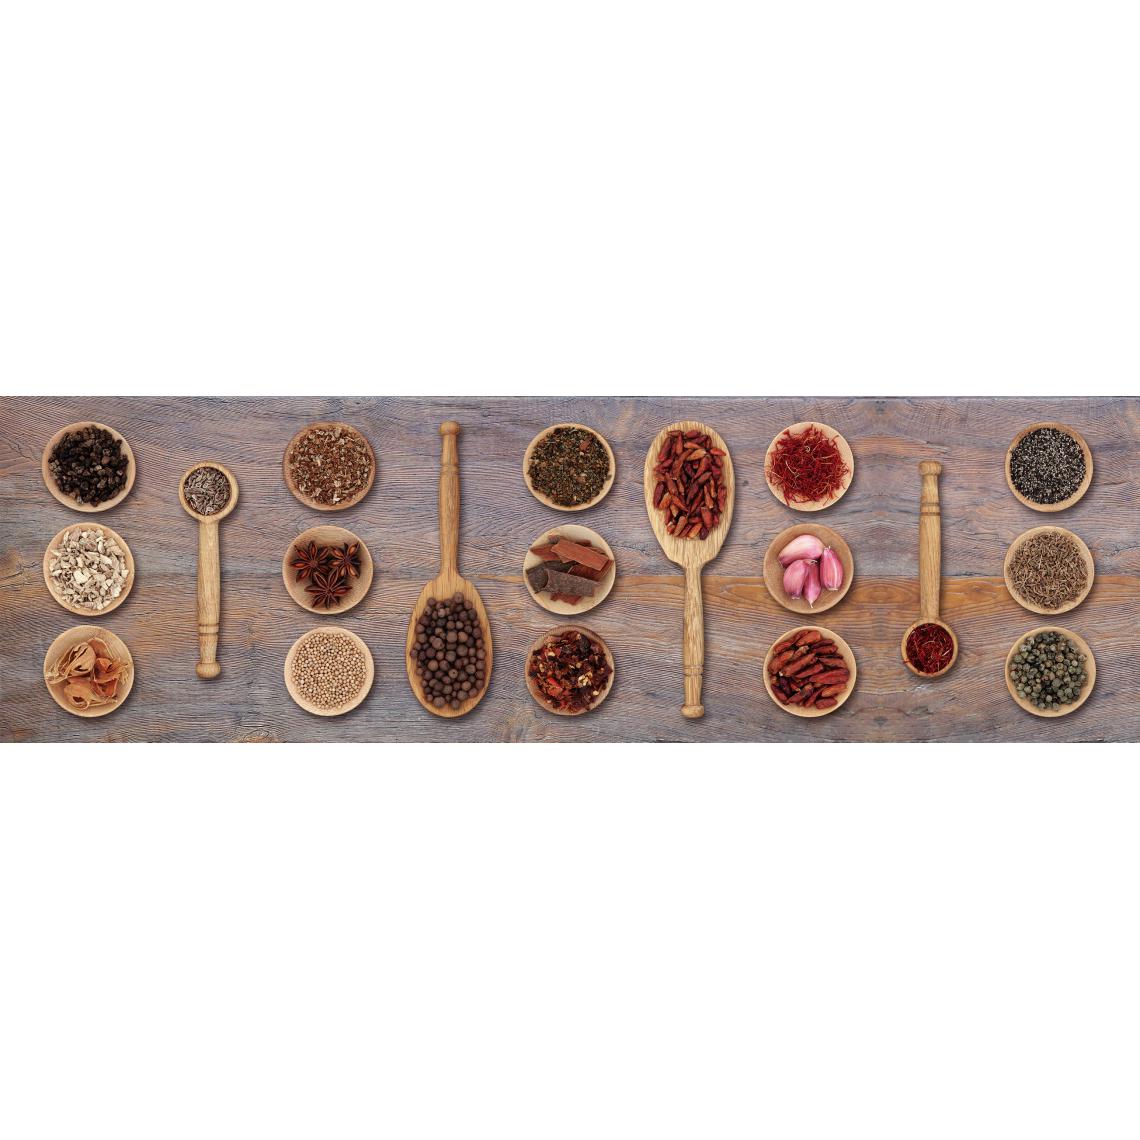 Alter - Tapis de cuisine, 100% Made in Italy, Tapis antitache avec impression numérique, Tapis antidérapant et lavable, Modèle Gudule, 220x52 cm - Tapis